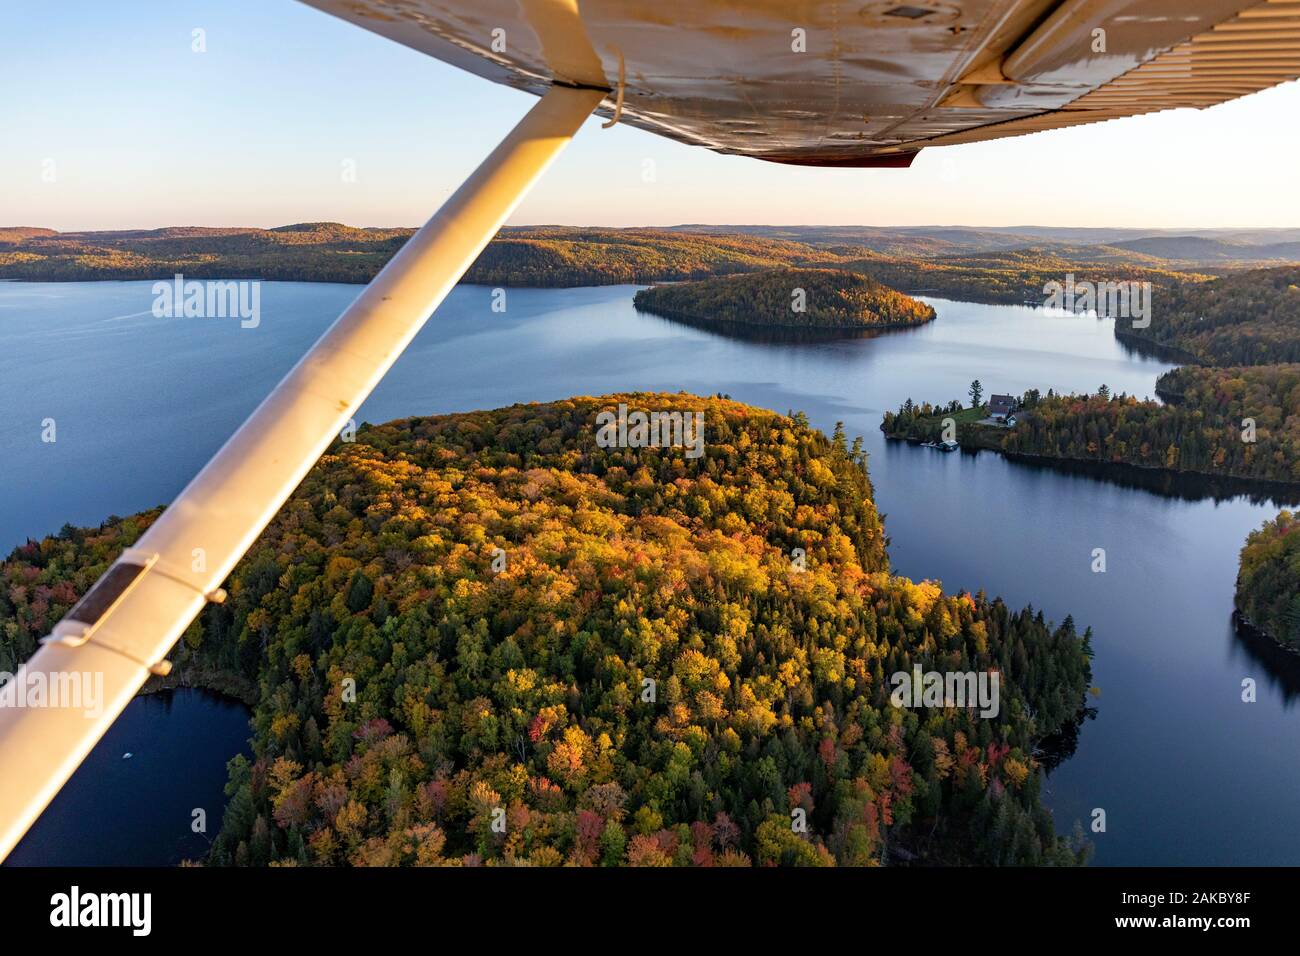 Canada, Province de Québec, région de la Mauricie, avec vol Hydravion Aventure société dans la période d'été indien, Cessna 206 sur la forêt boréale (vue aérienne) Banque D'Images